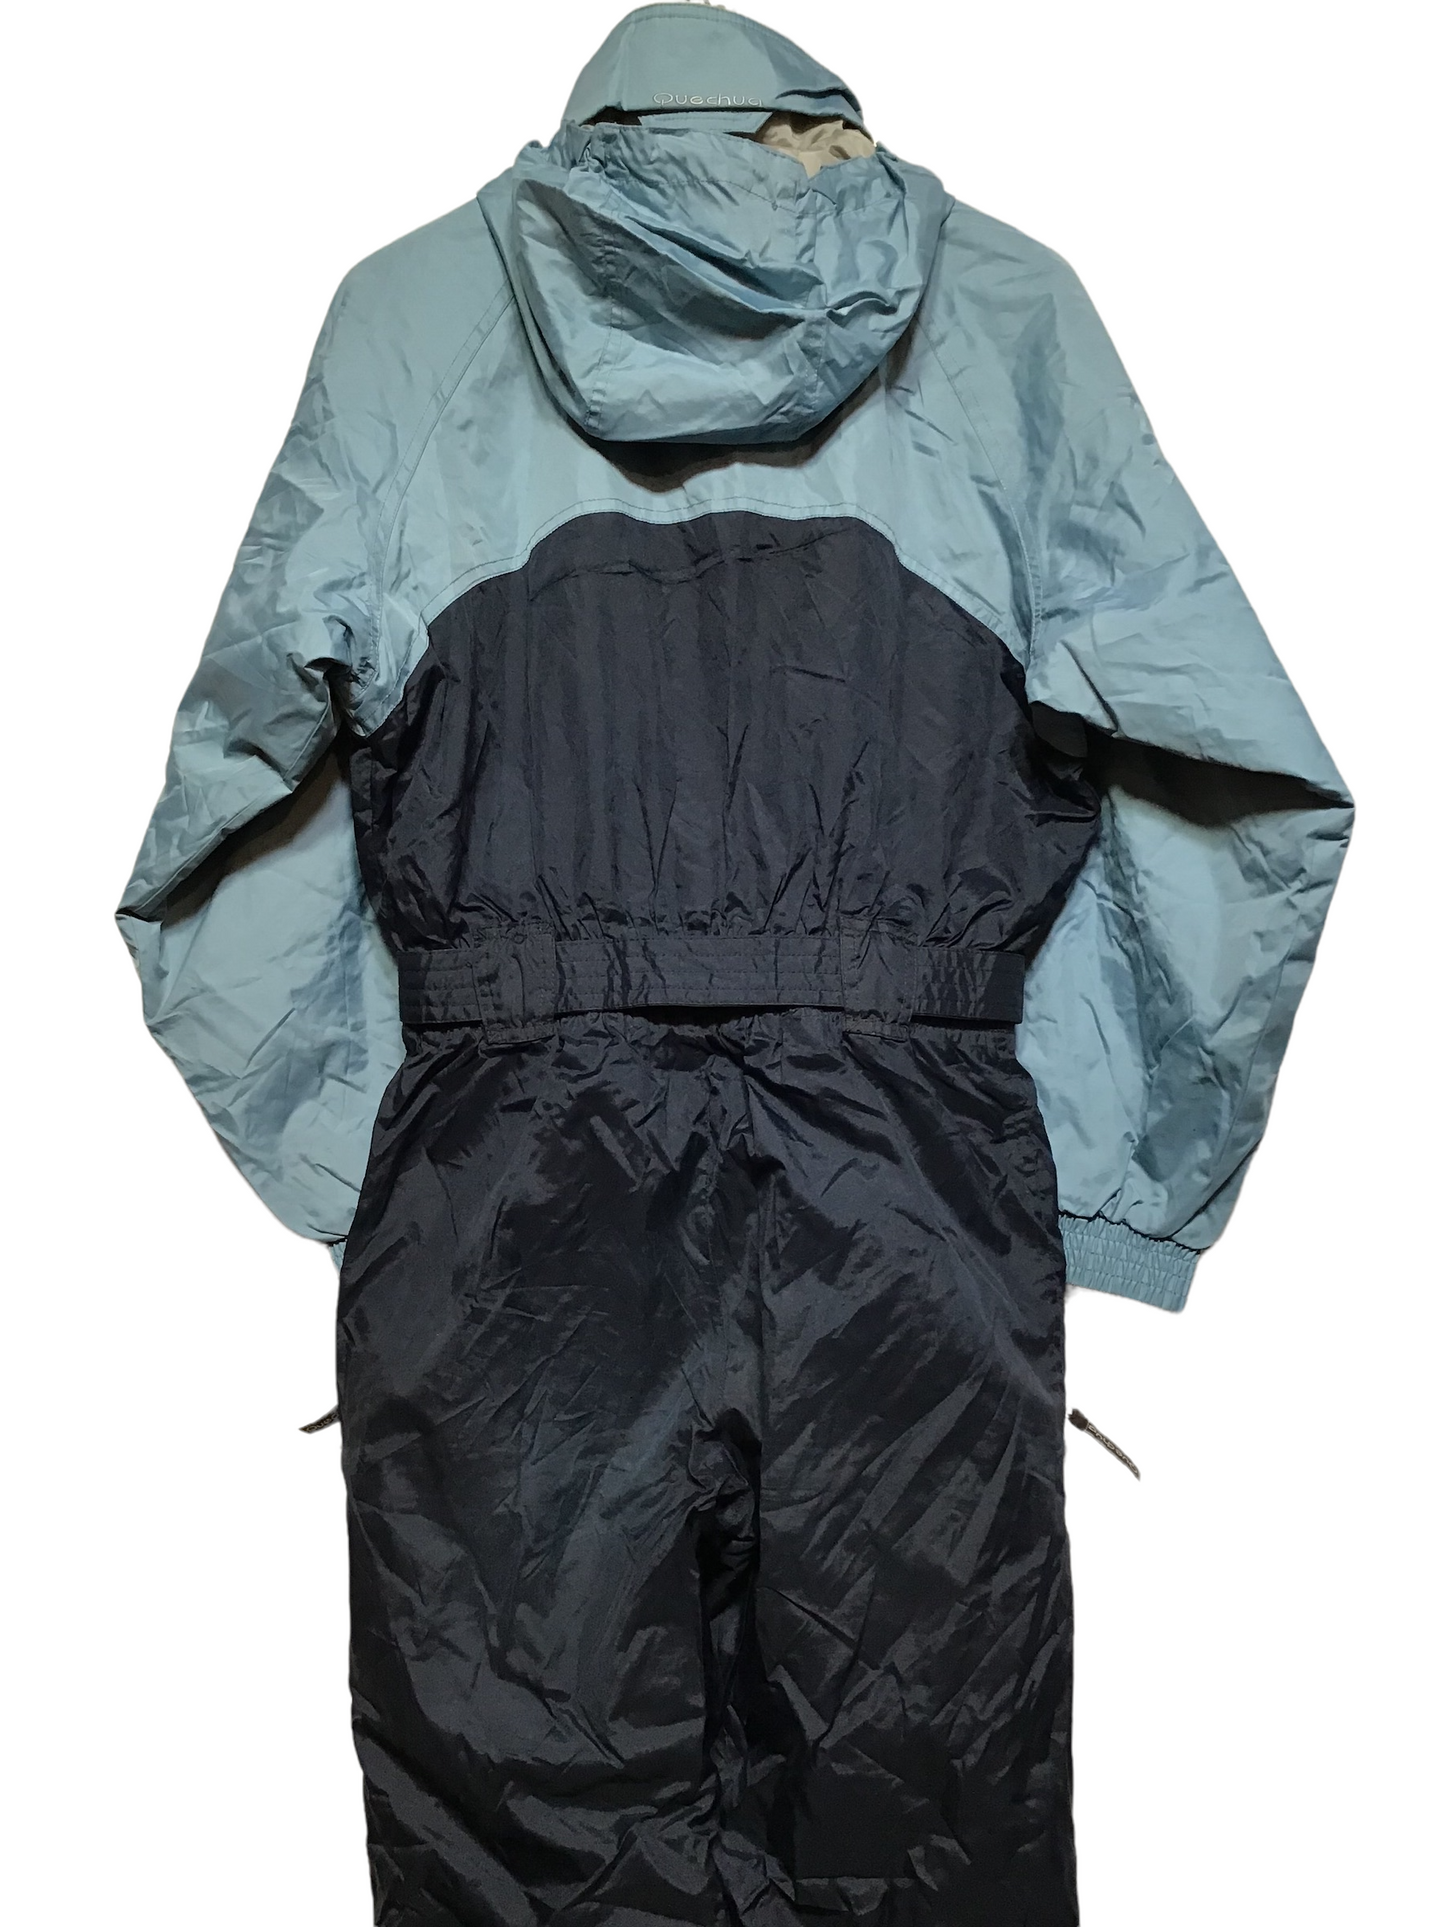 Quechua Blue Ski Suit (Size XL)